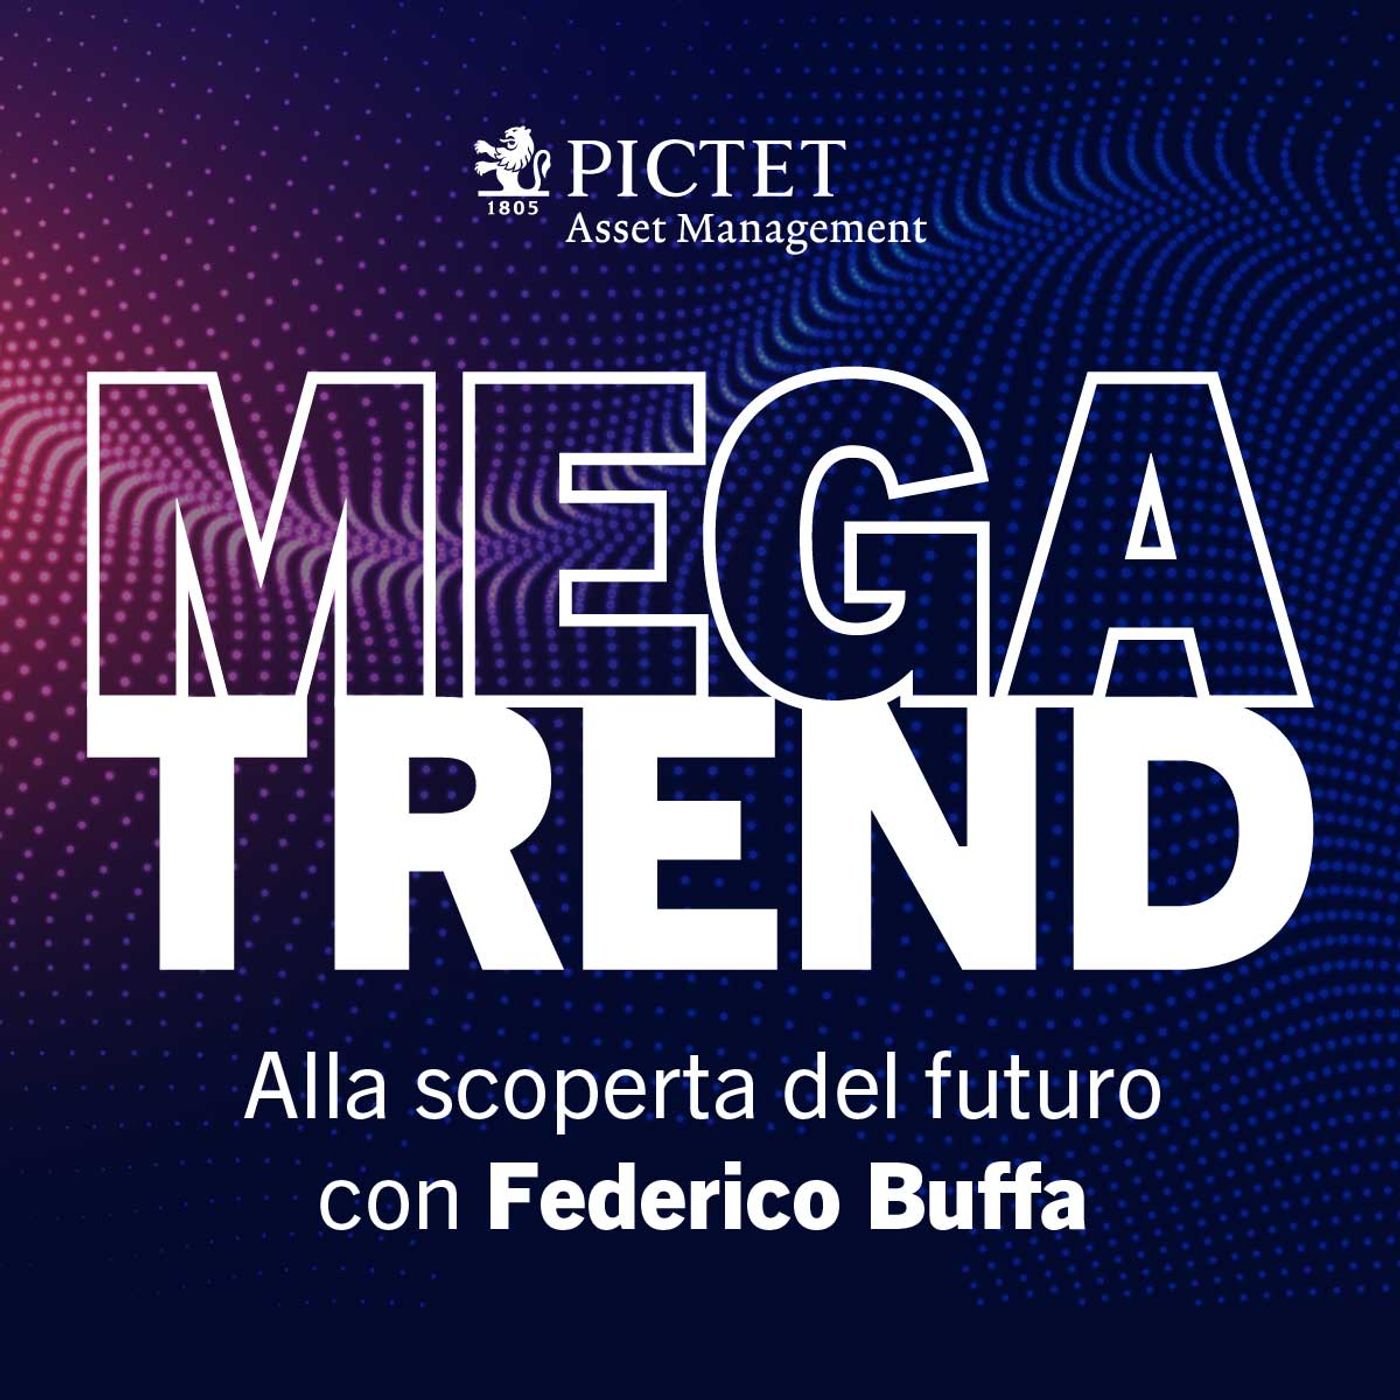 Dr Podcast - Megatrend - Alla scoperta del futuro con Federico Buffa